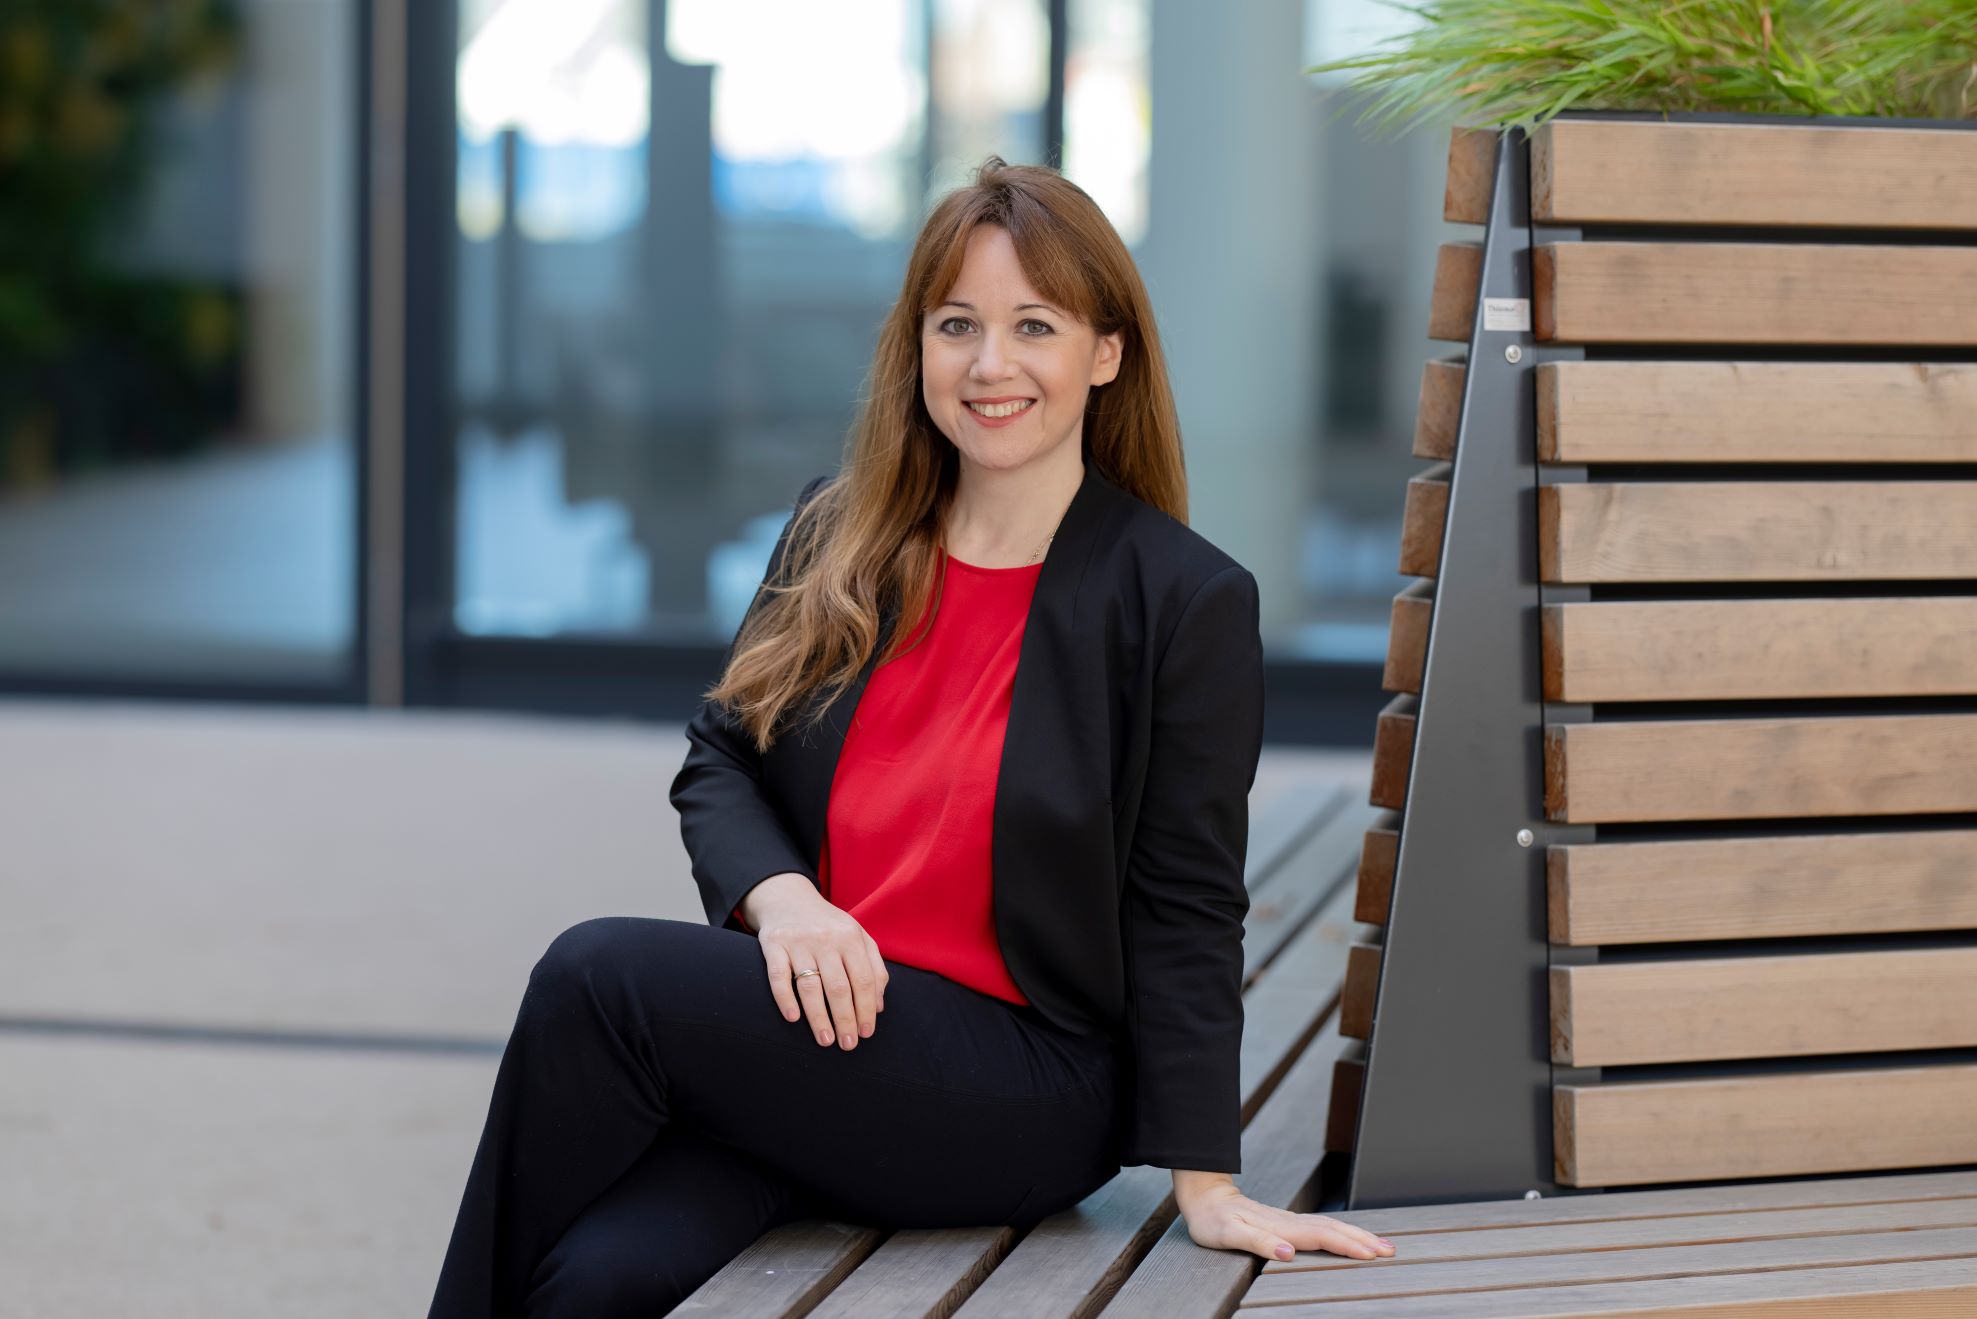 Veronika Birkheim Gründerin von PEOPLETALENT lächelnd auf einer Bank sitzend.